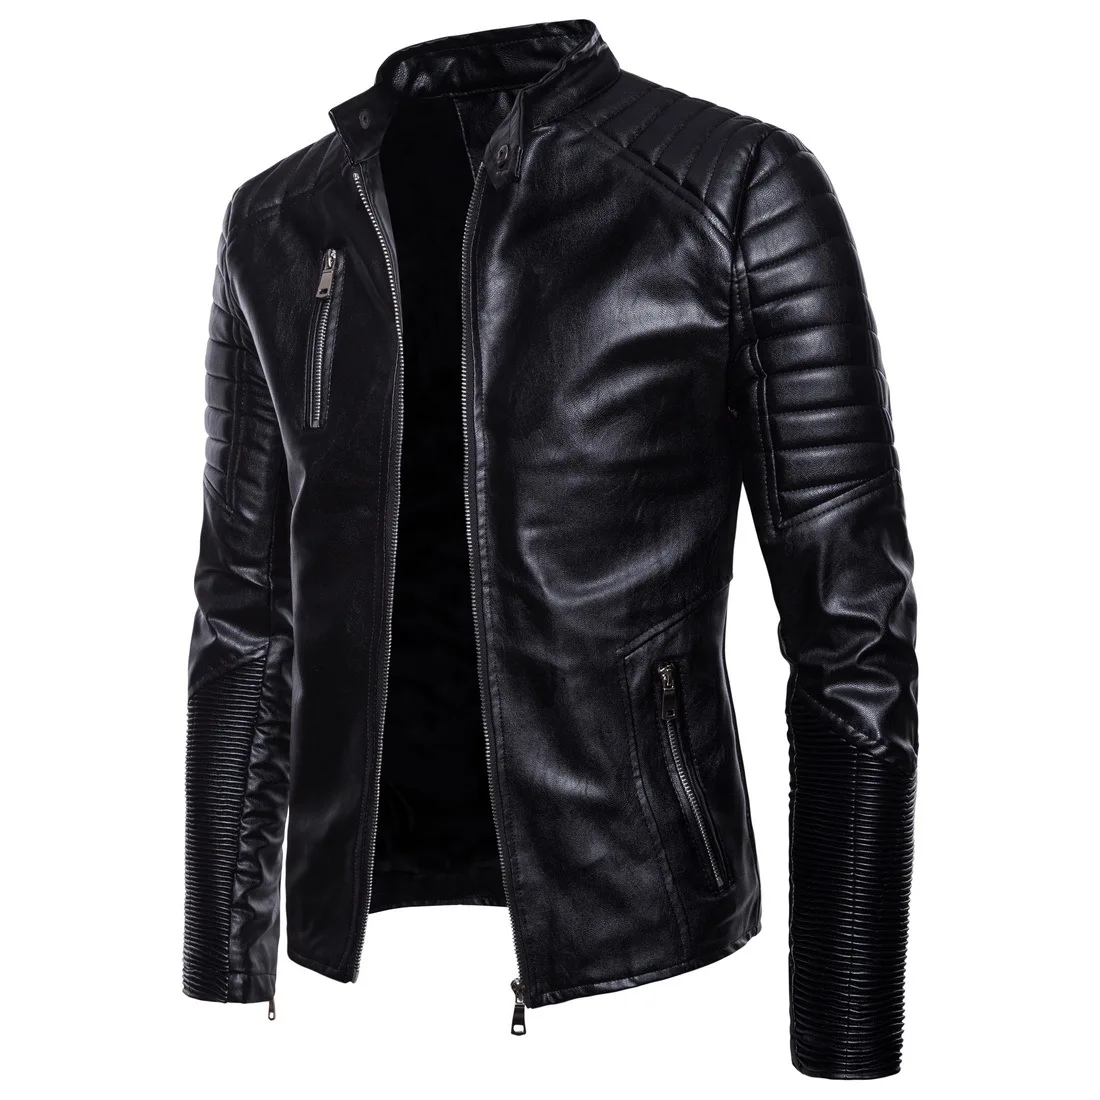 Европейские Размеры бутик панк Для мужчин мотоциклетная куртка с застежкой-молнией Кожаная Куртка Jaqueta De Couro Для мужчин s кожаная куртка уличной